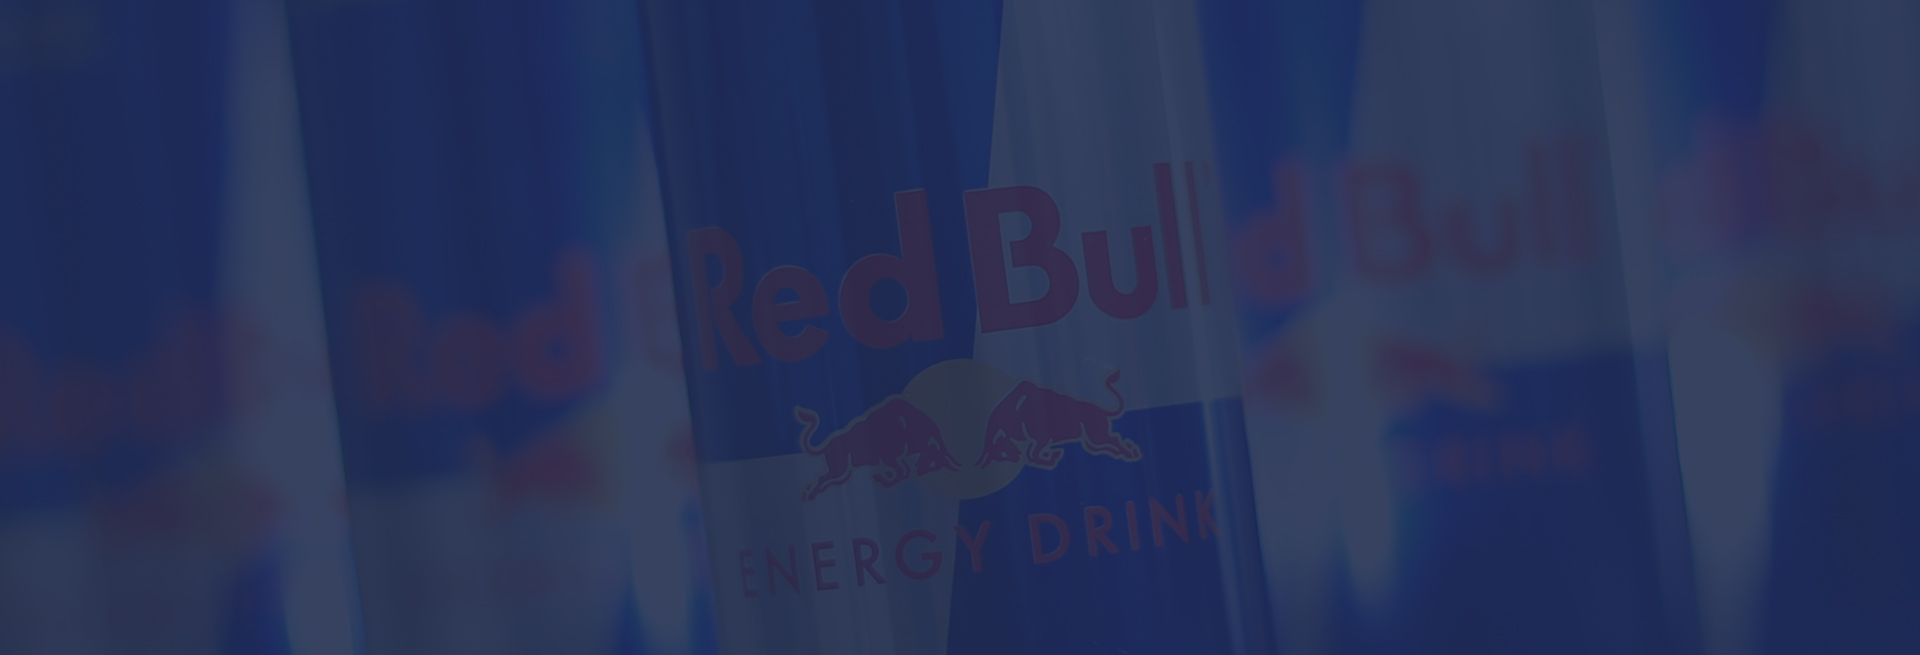 Red Bull advertising, marketing & branding